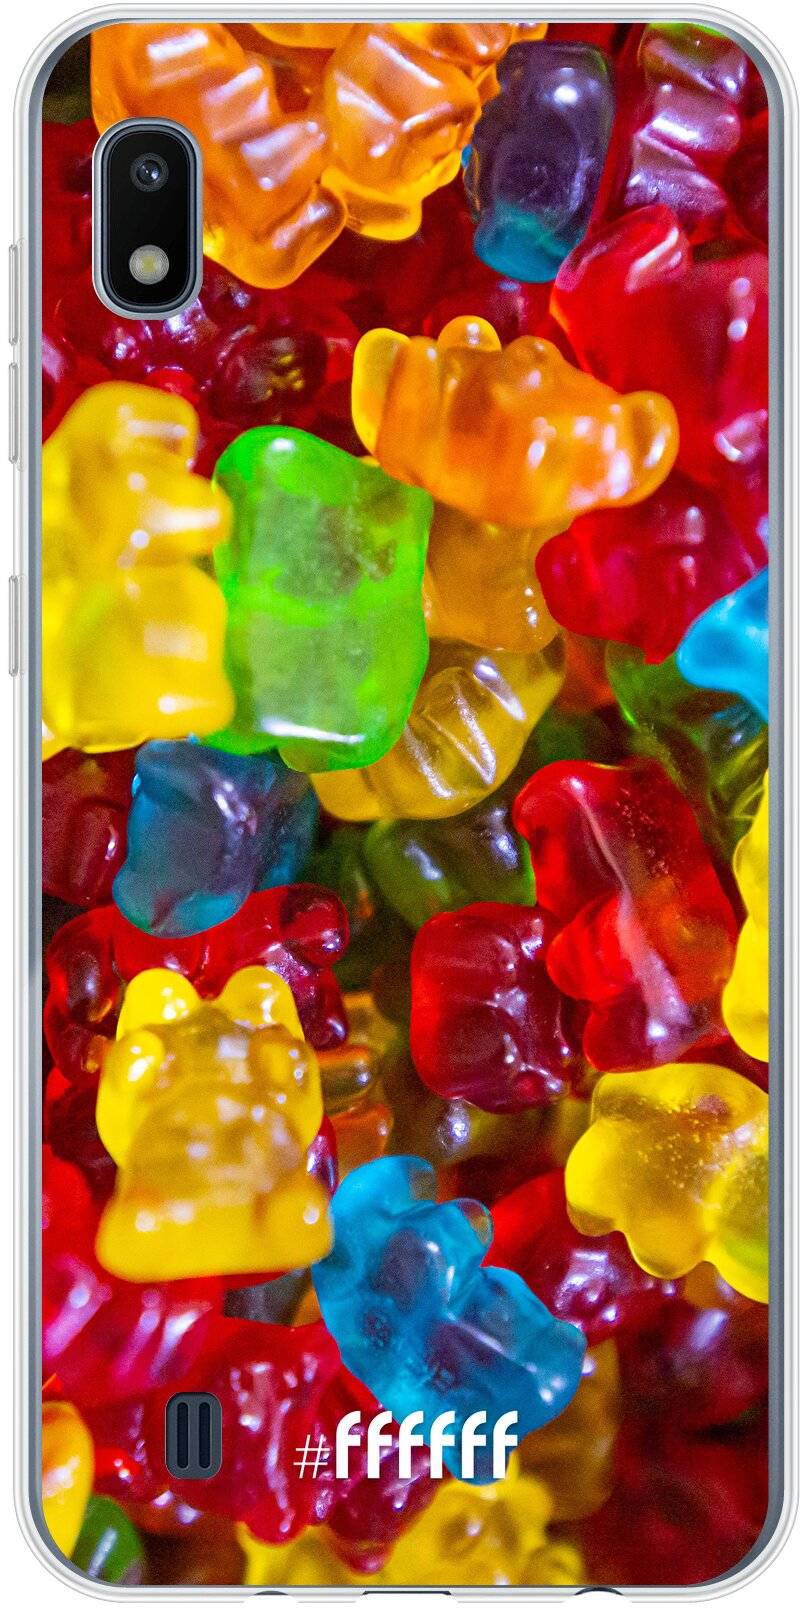 Gummy Bears Galaxy A10